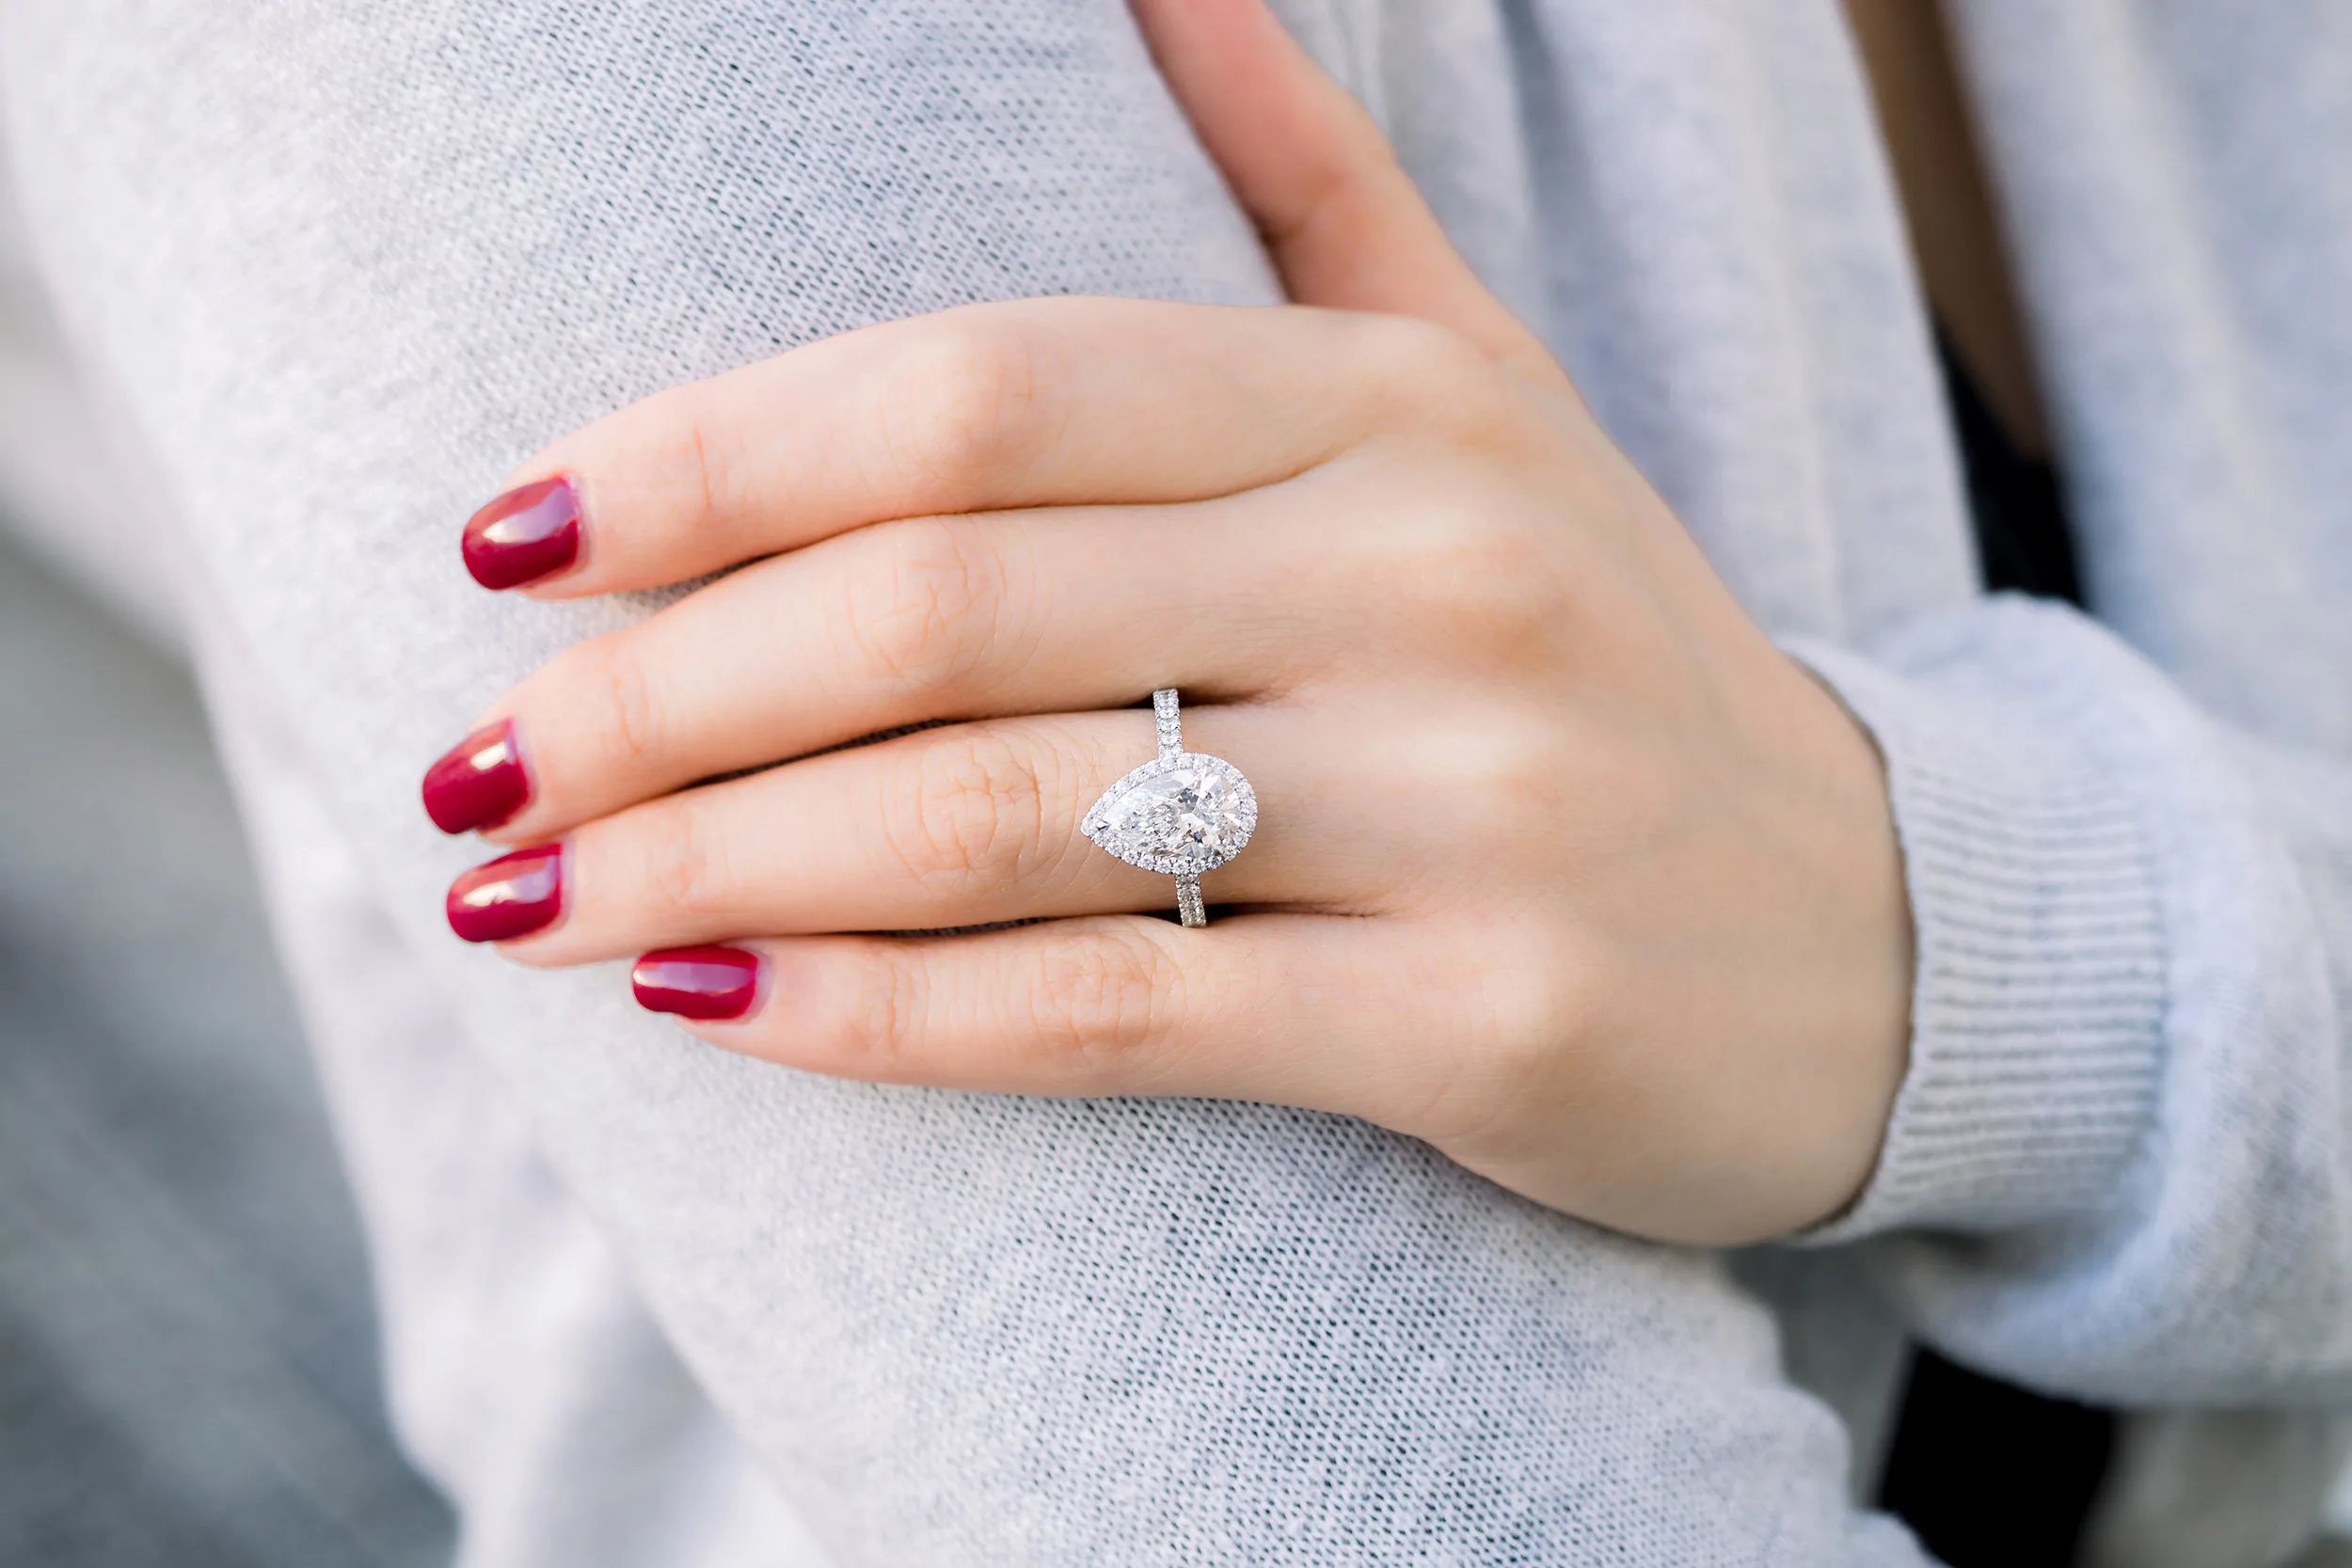 This Unique 2 Carat Rose-Cut Diamond Ring for your partner